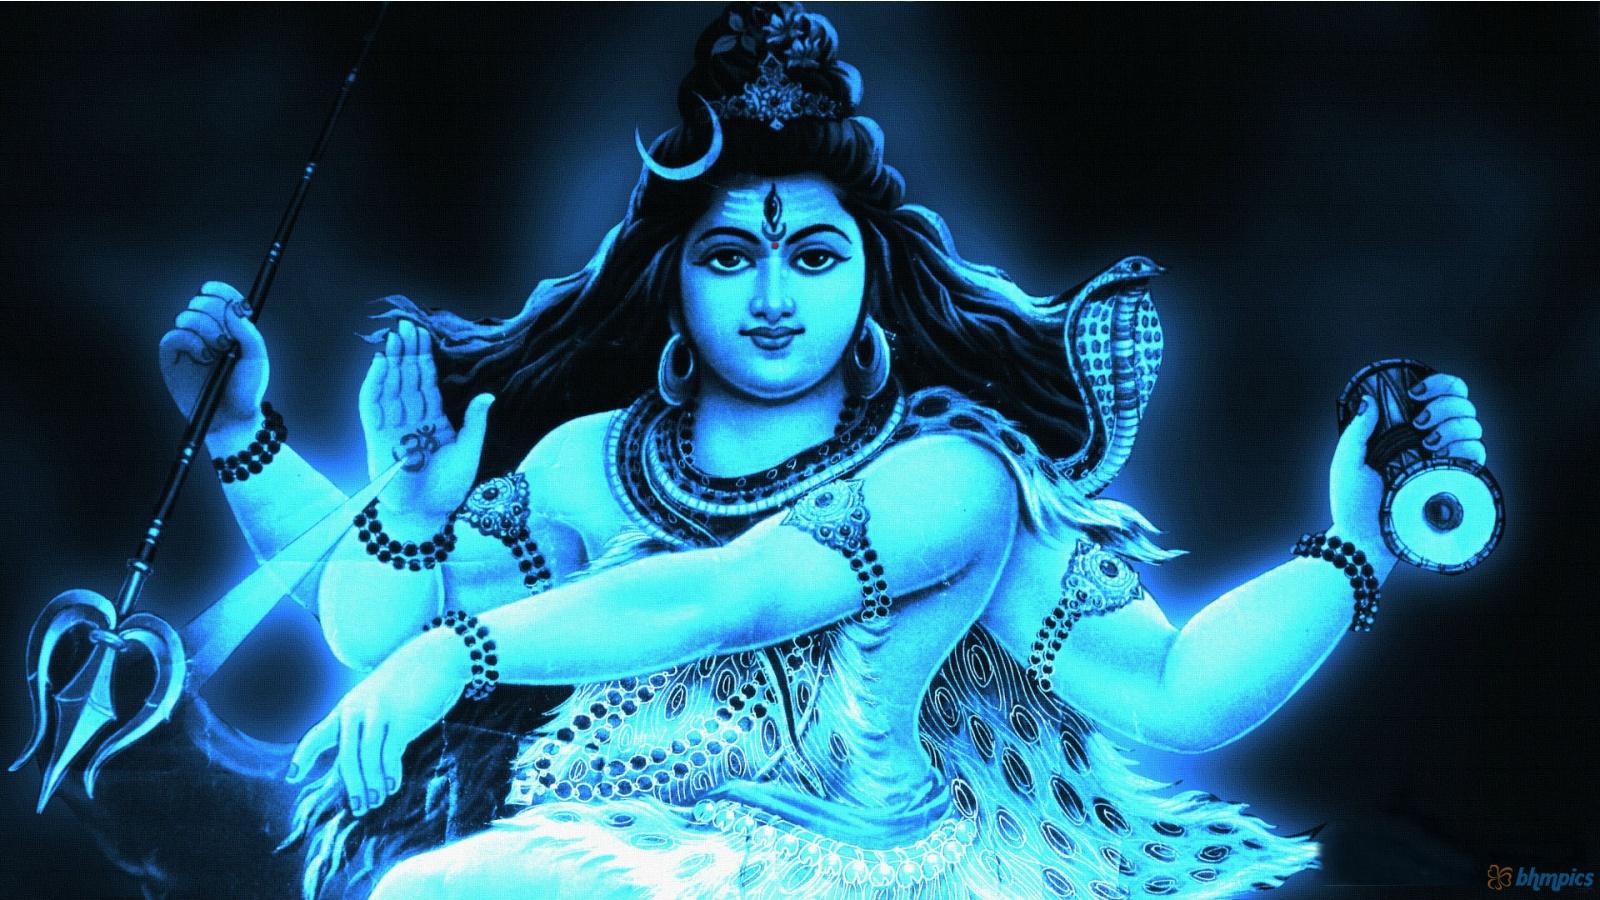 Lord Shiva Wallpaper 3D